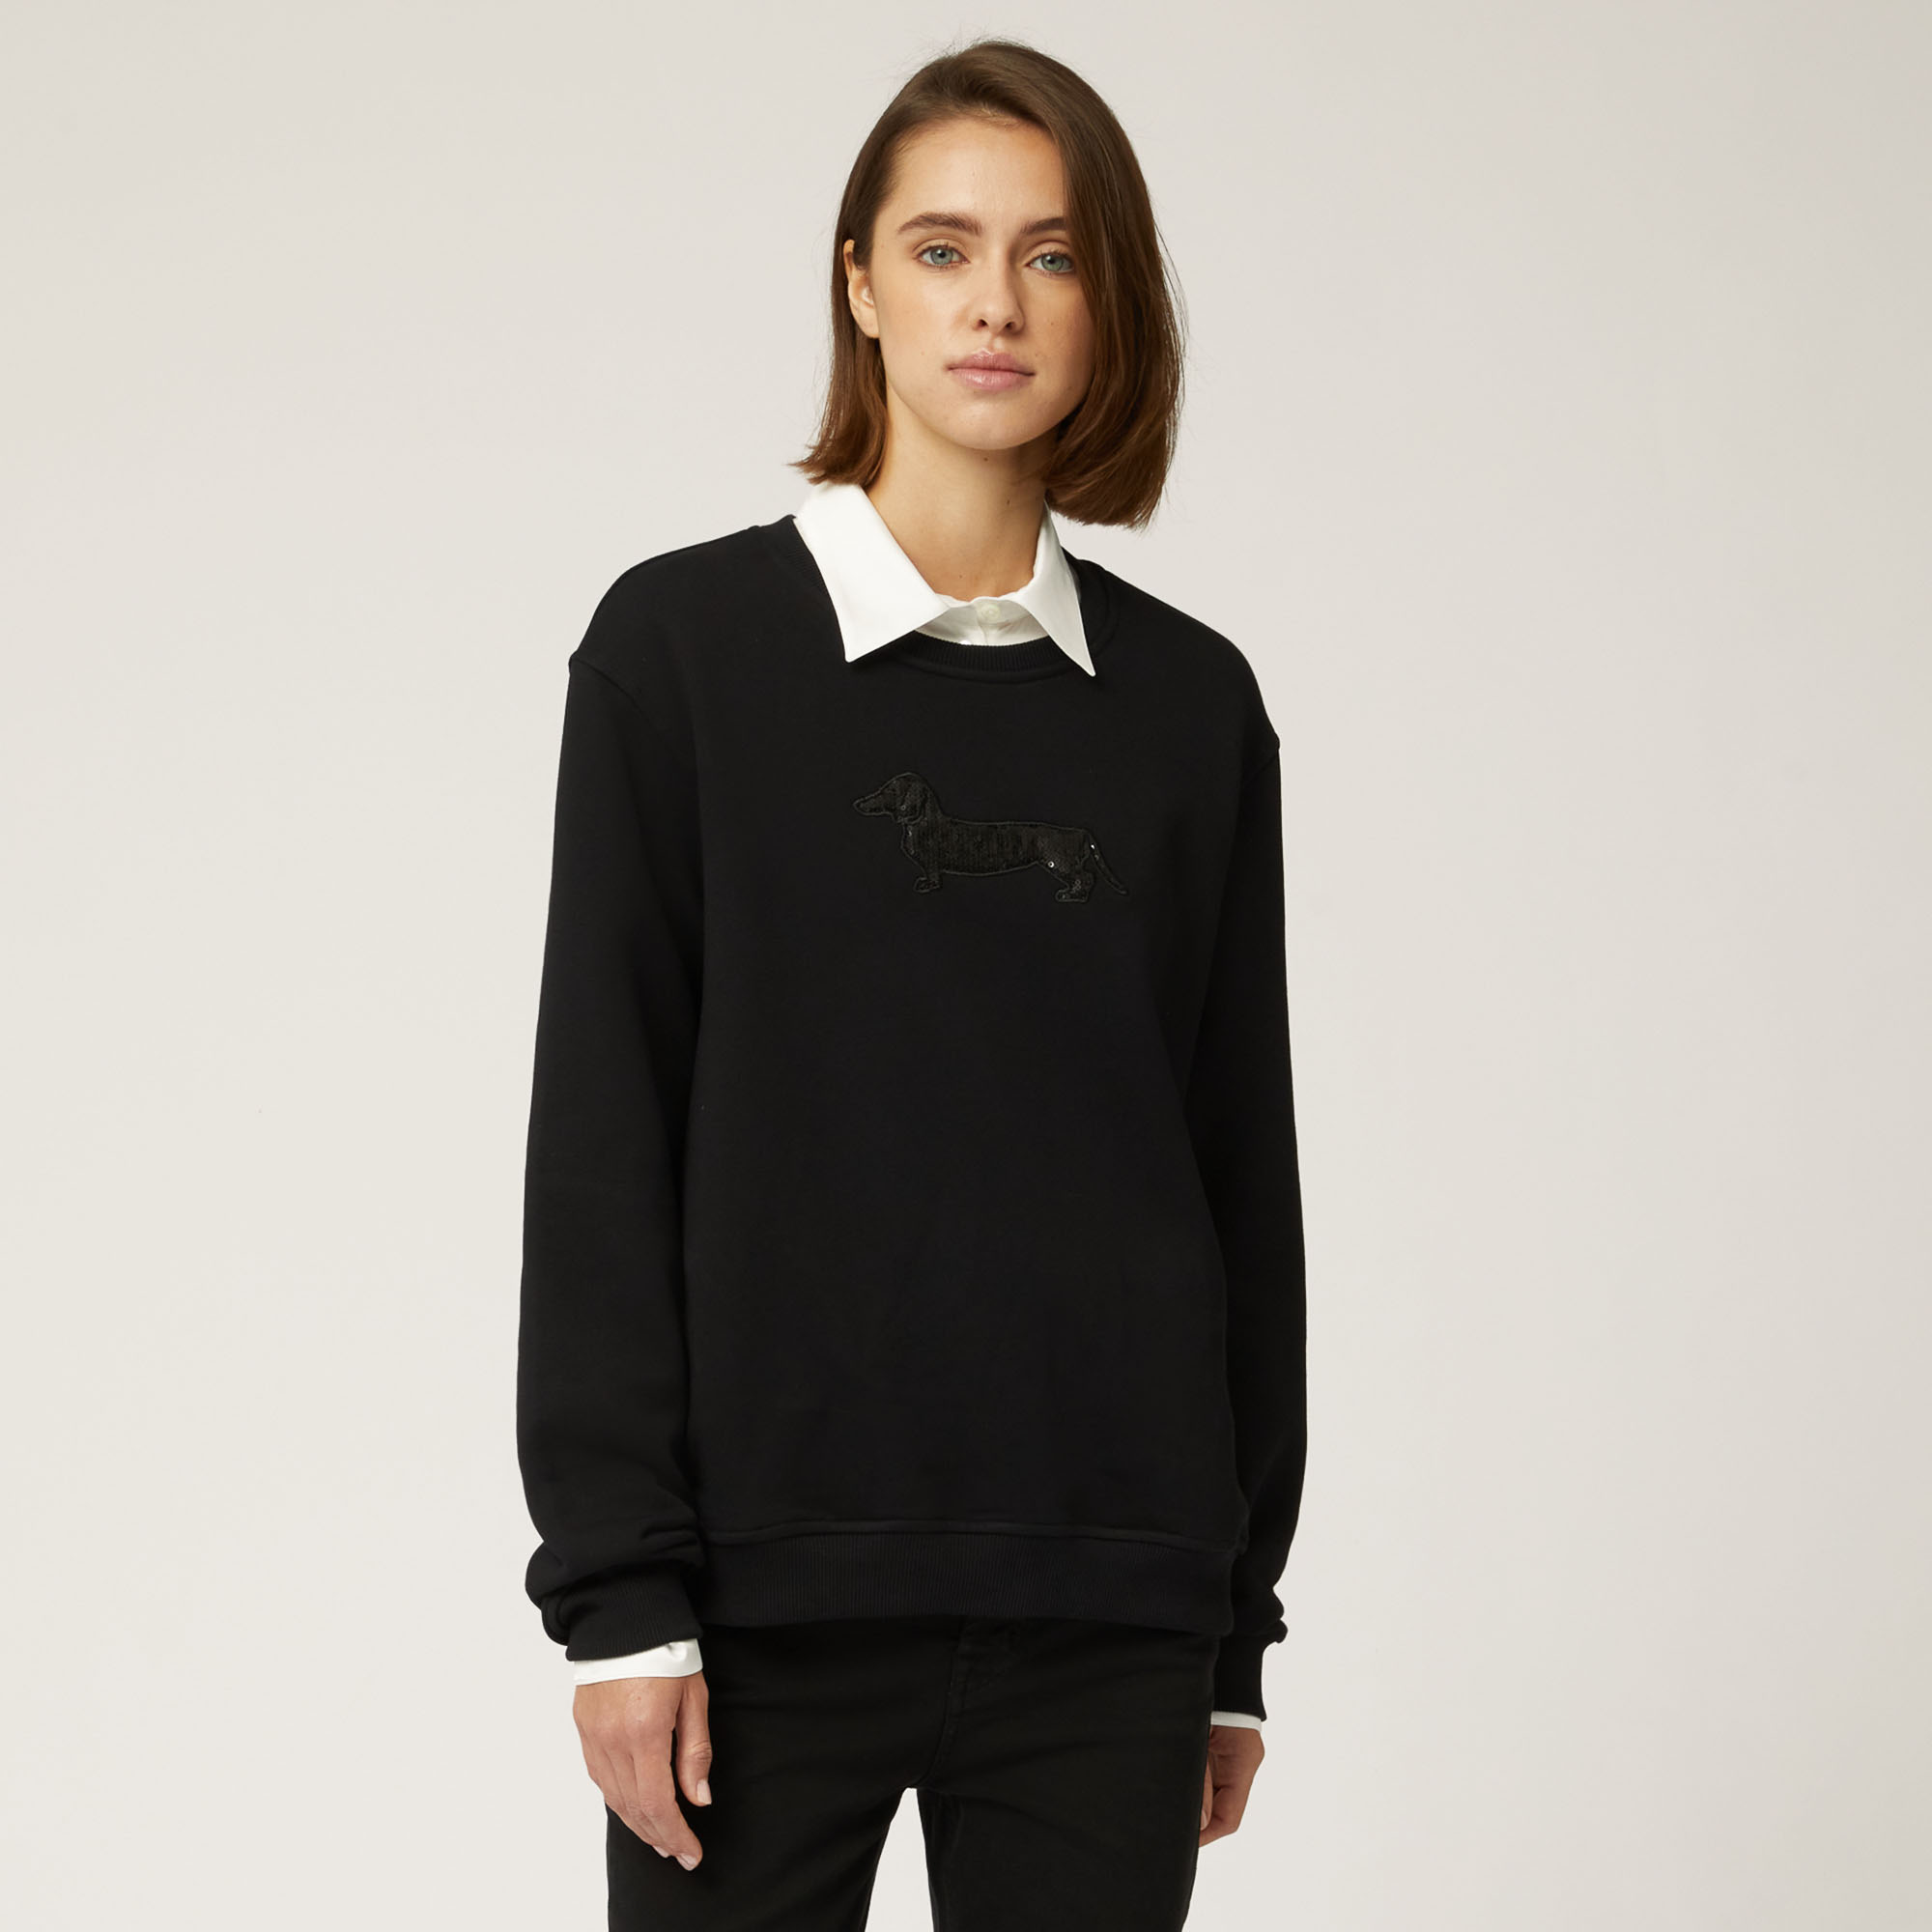 Sequined Dachshund Boxy Sweatshirt, Black, large